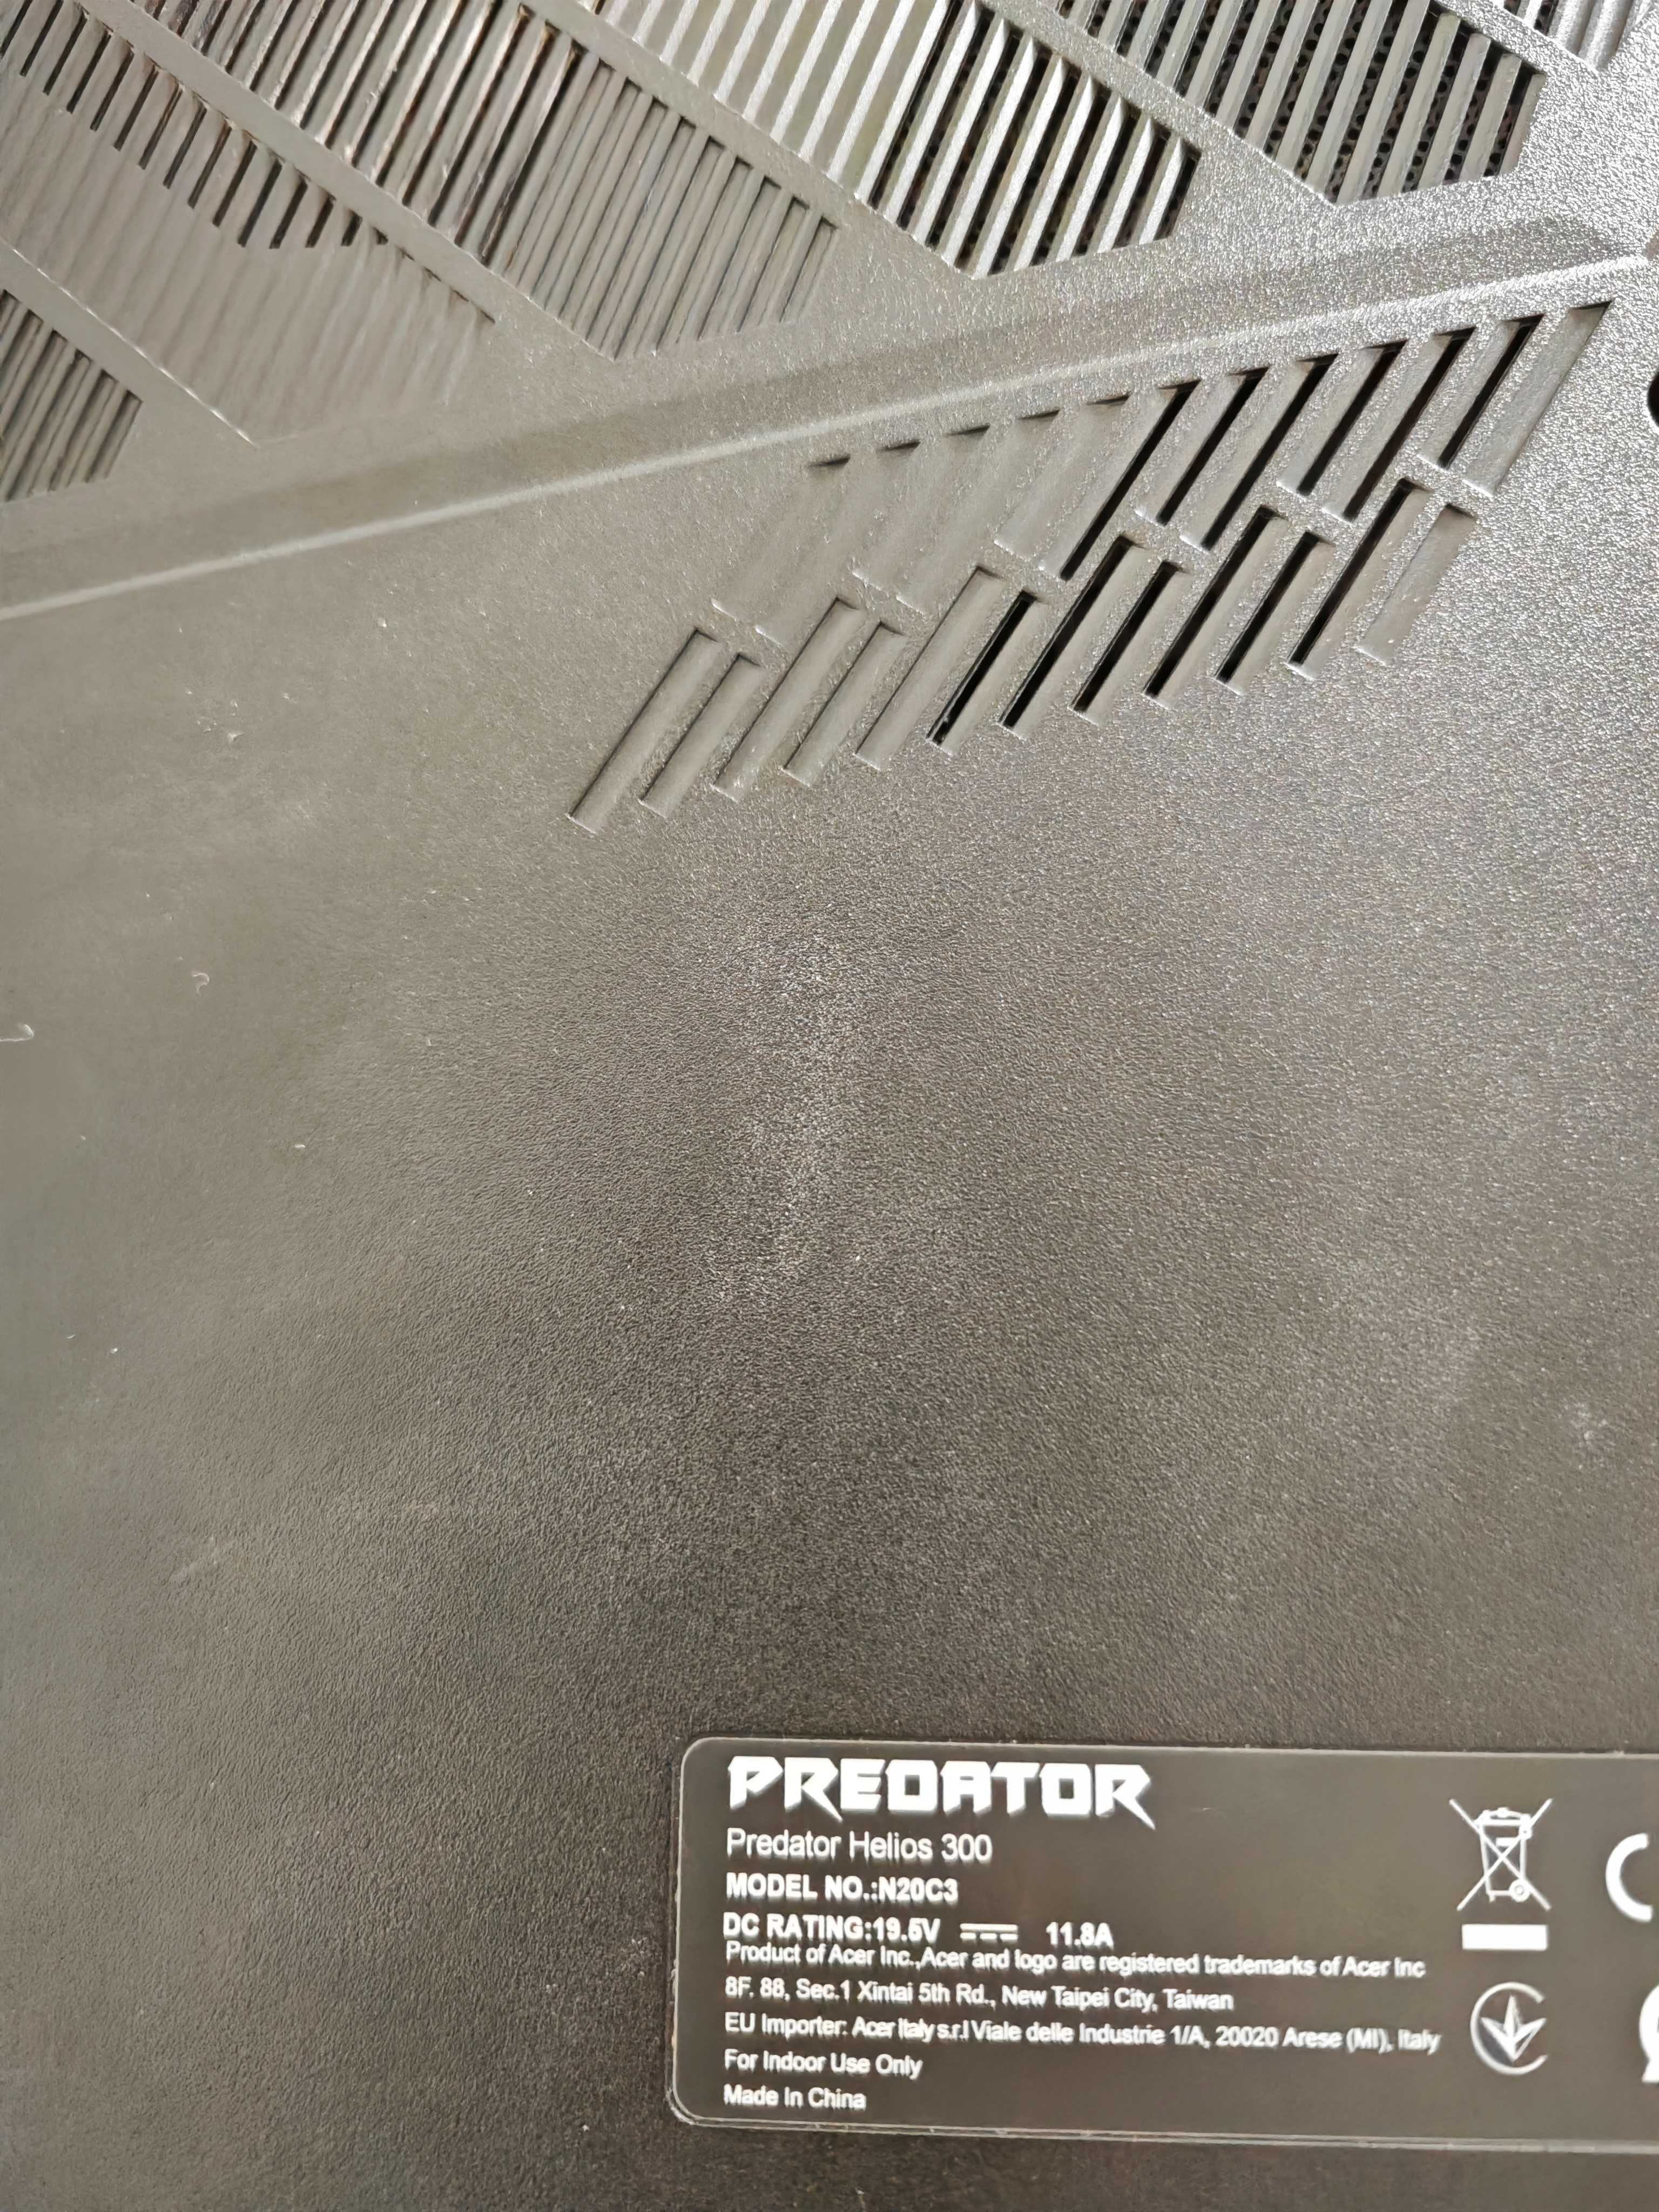 Acer Predator Helios 300 i7-10750H, 16GB RAM, 1TB HDD/500GB SSD